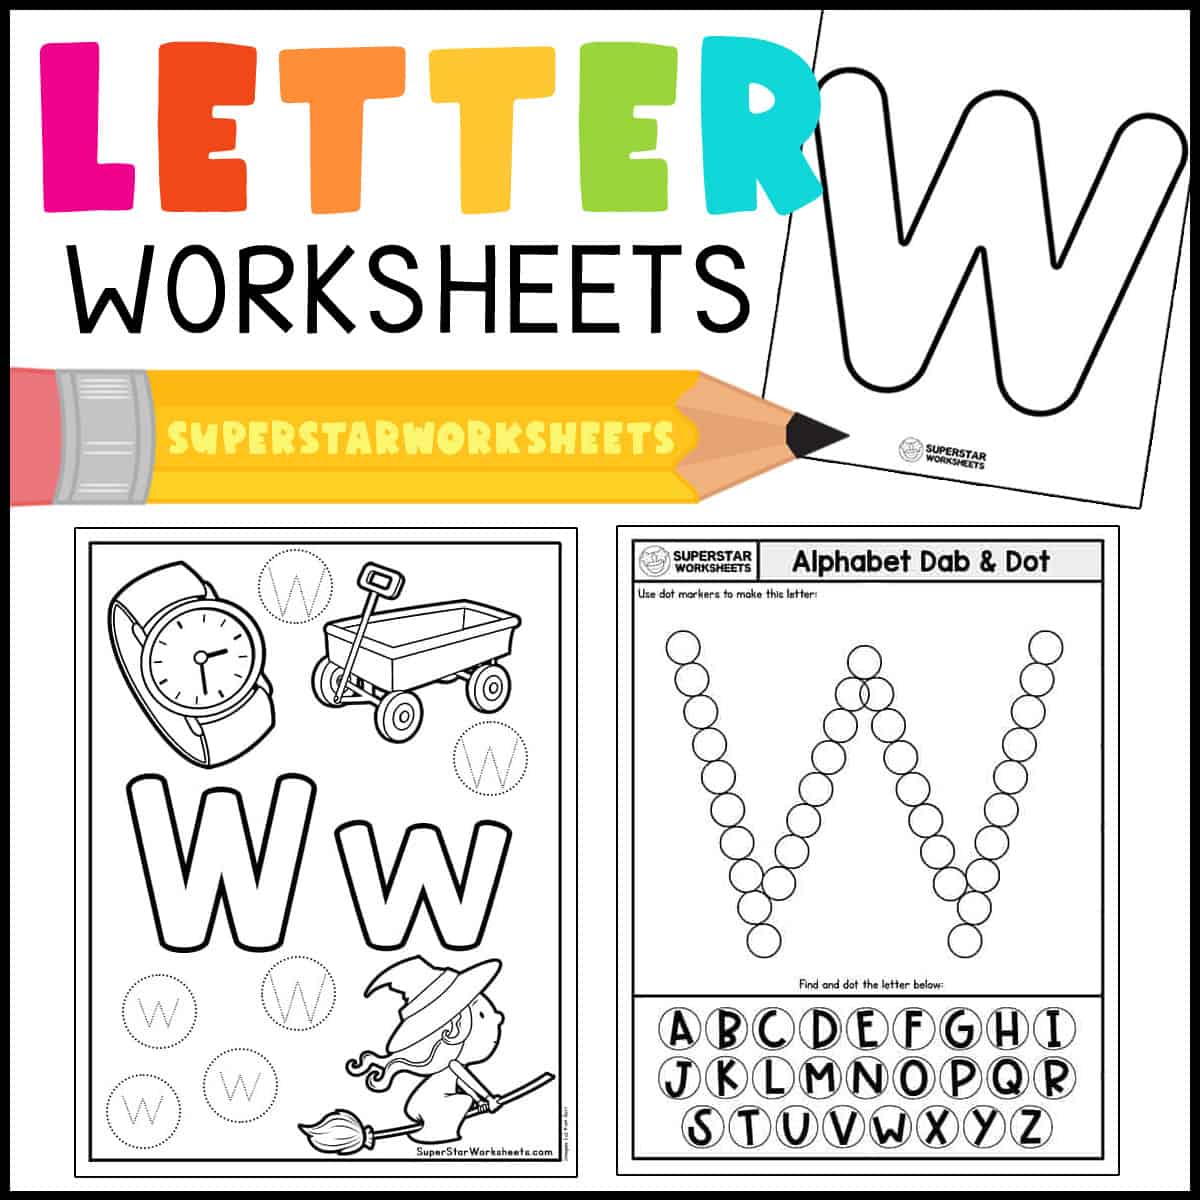 letter w activities for kindergarten